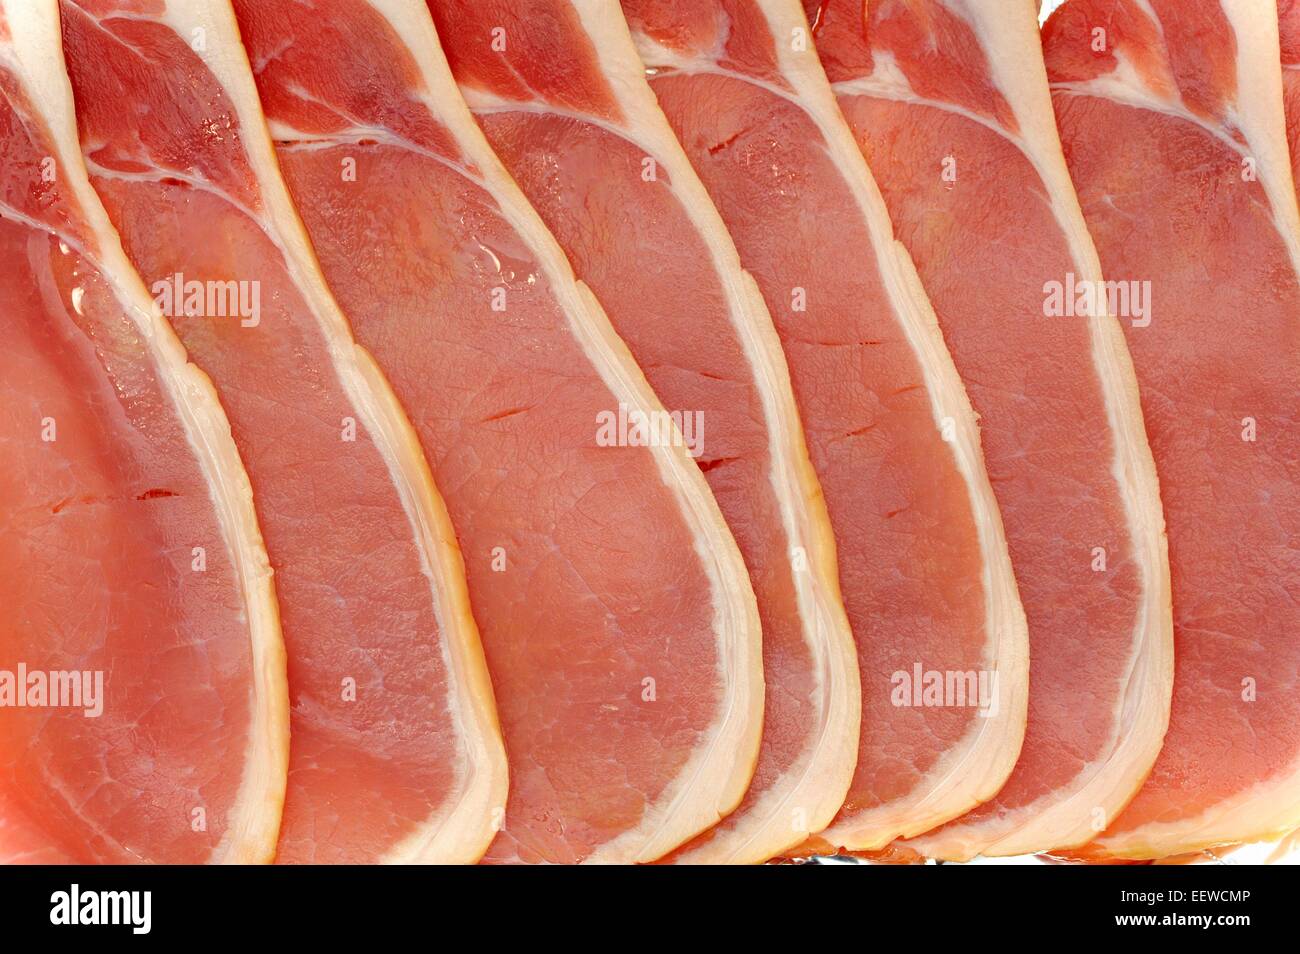 Tranches de bacon fumé non cuites brutes Banque D'Images